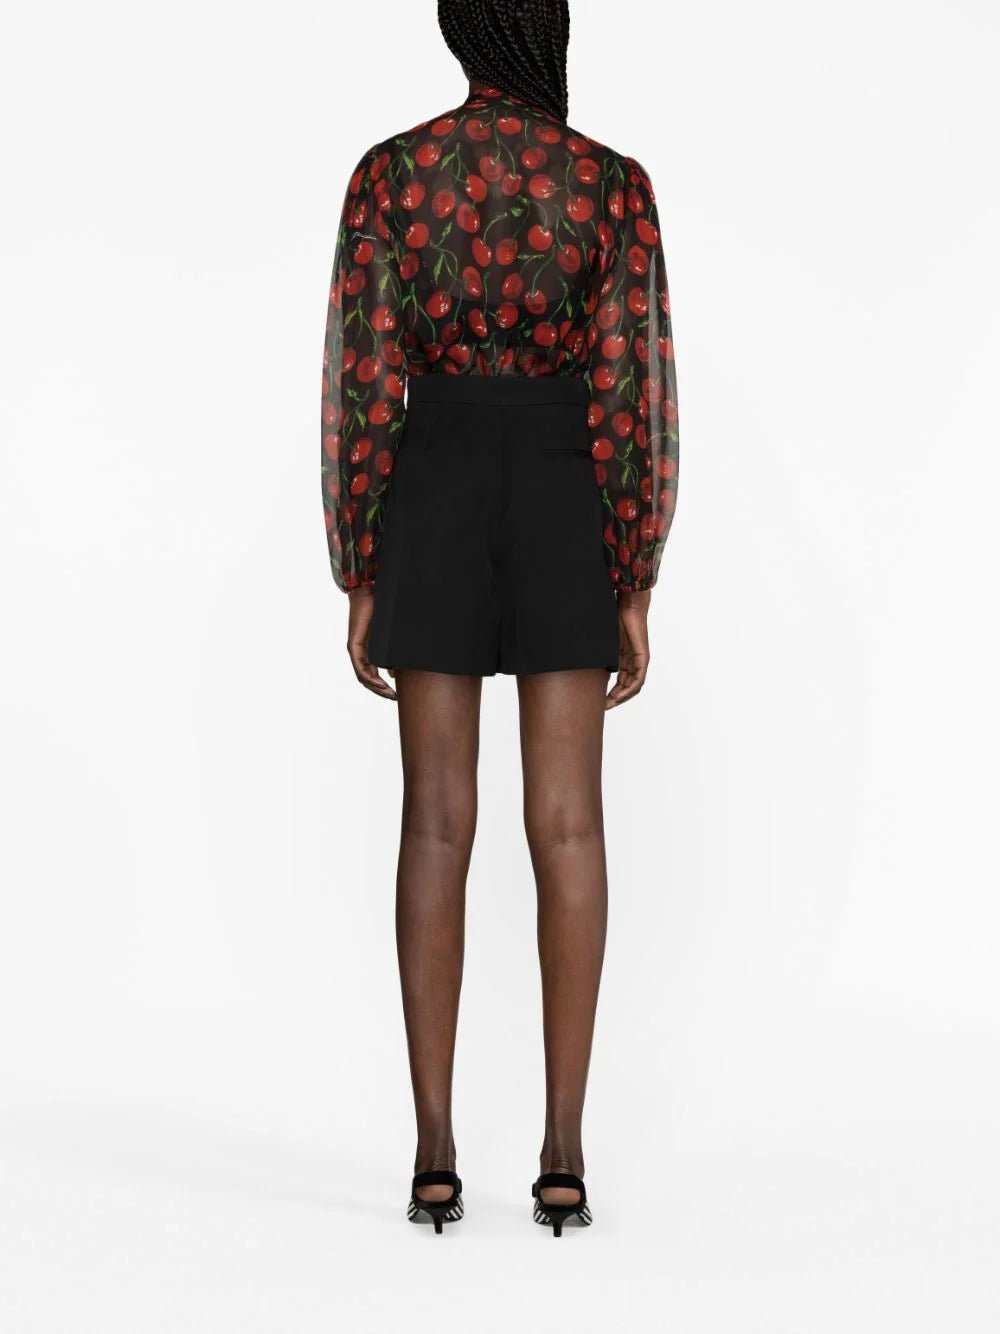 Dolce & GabbanaCherry-Print Silk Blouse at Fashion Clinic